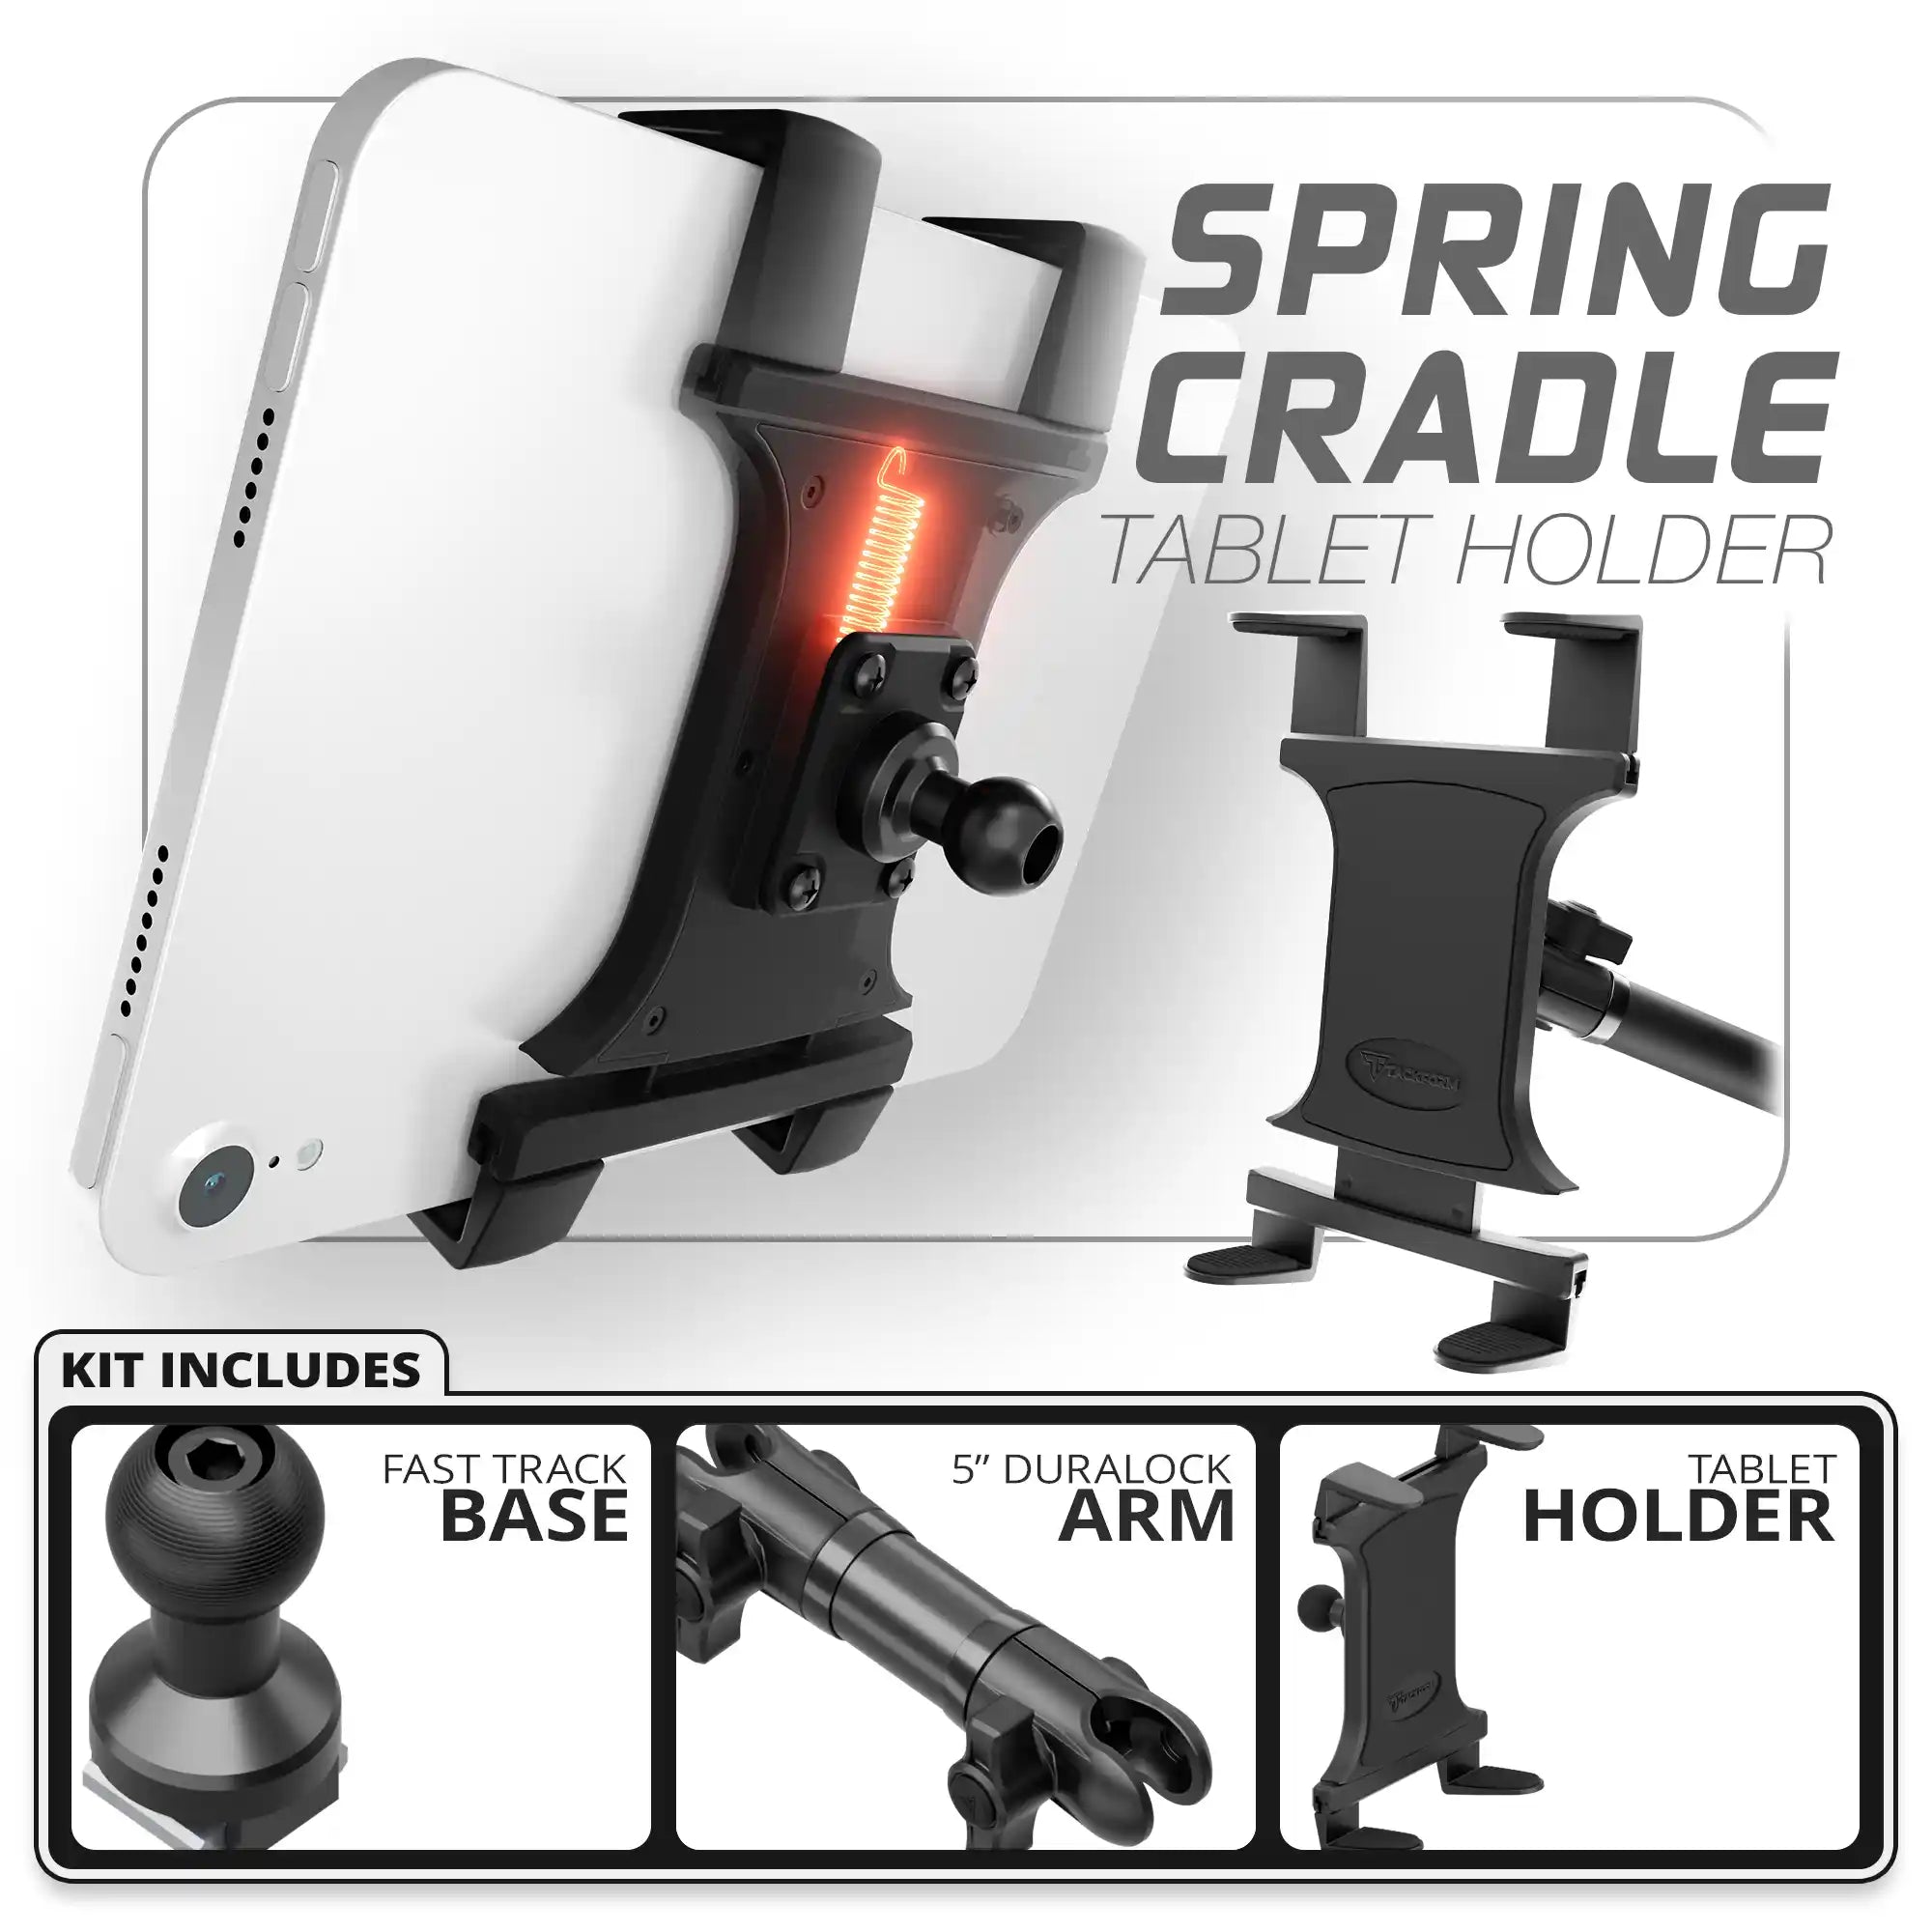 Tablet Spring Cradle | Fast Track Base | 5" DuraLock Arm